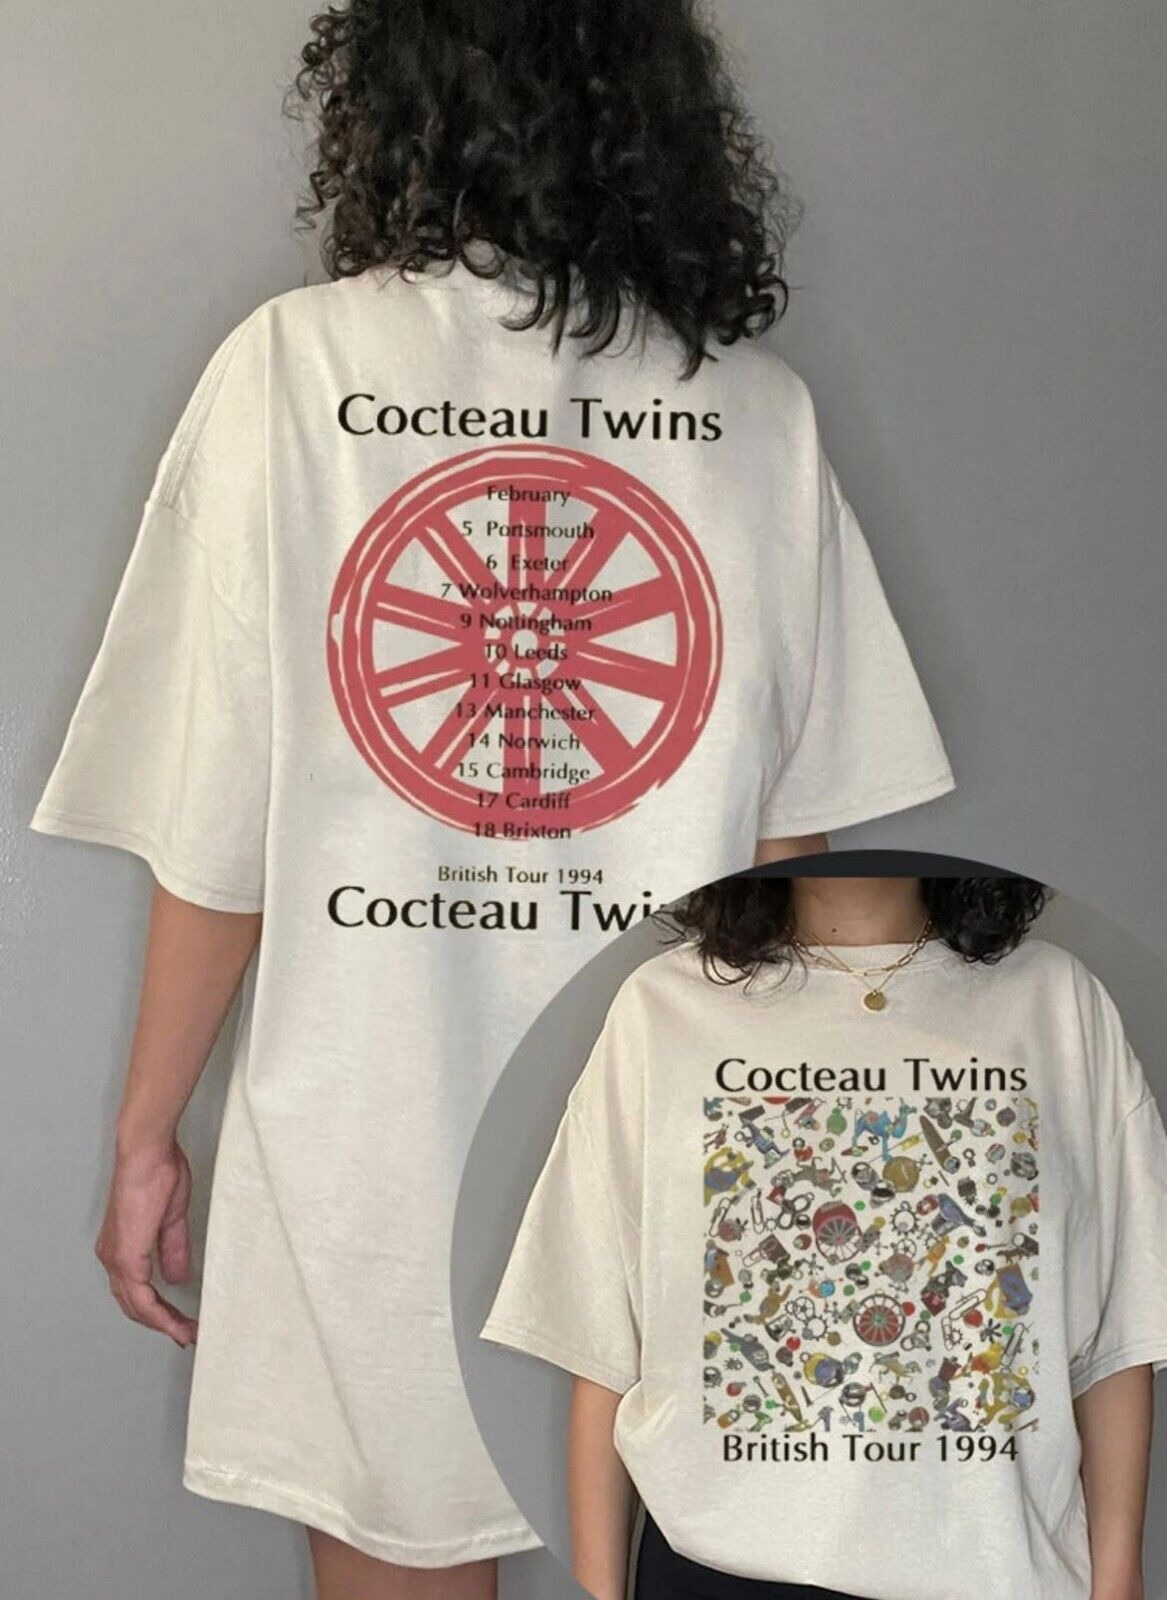 1994 Uk tour Cocteau Twins Tshirt, Cocteau Twins British Tour 1994 T-shirt, Coct